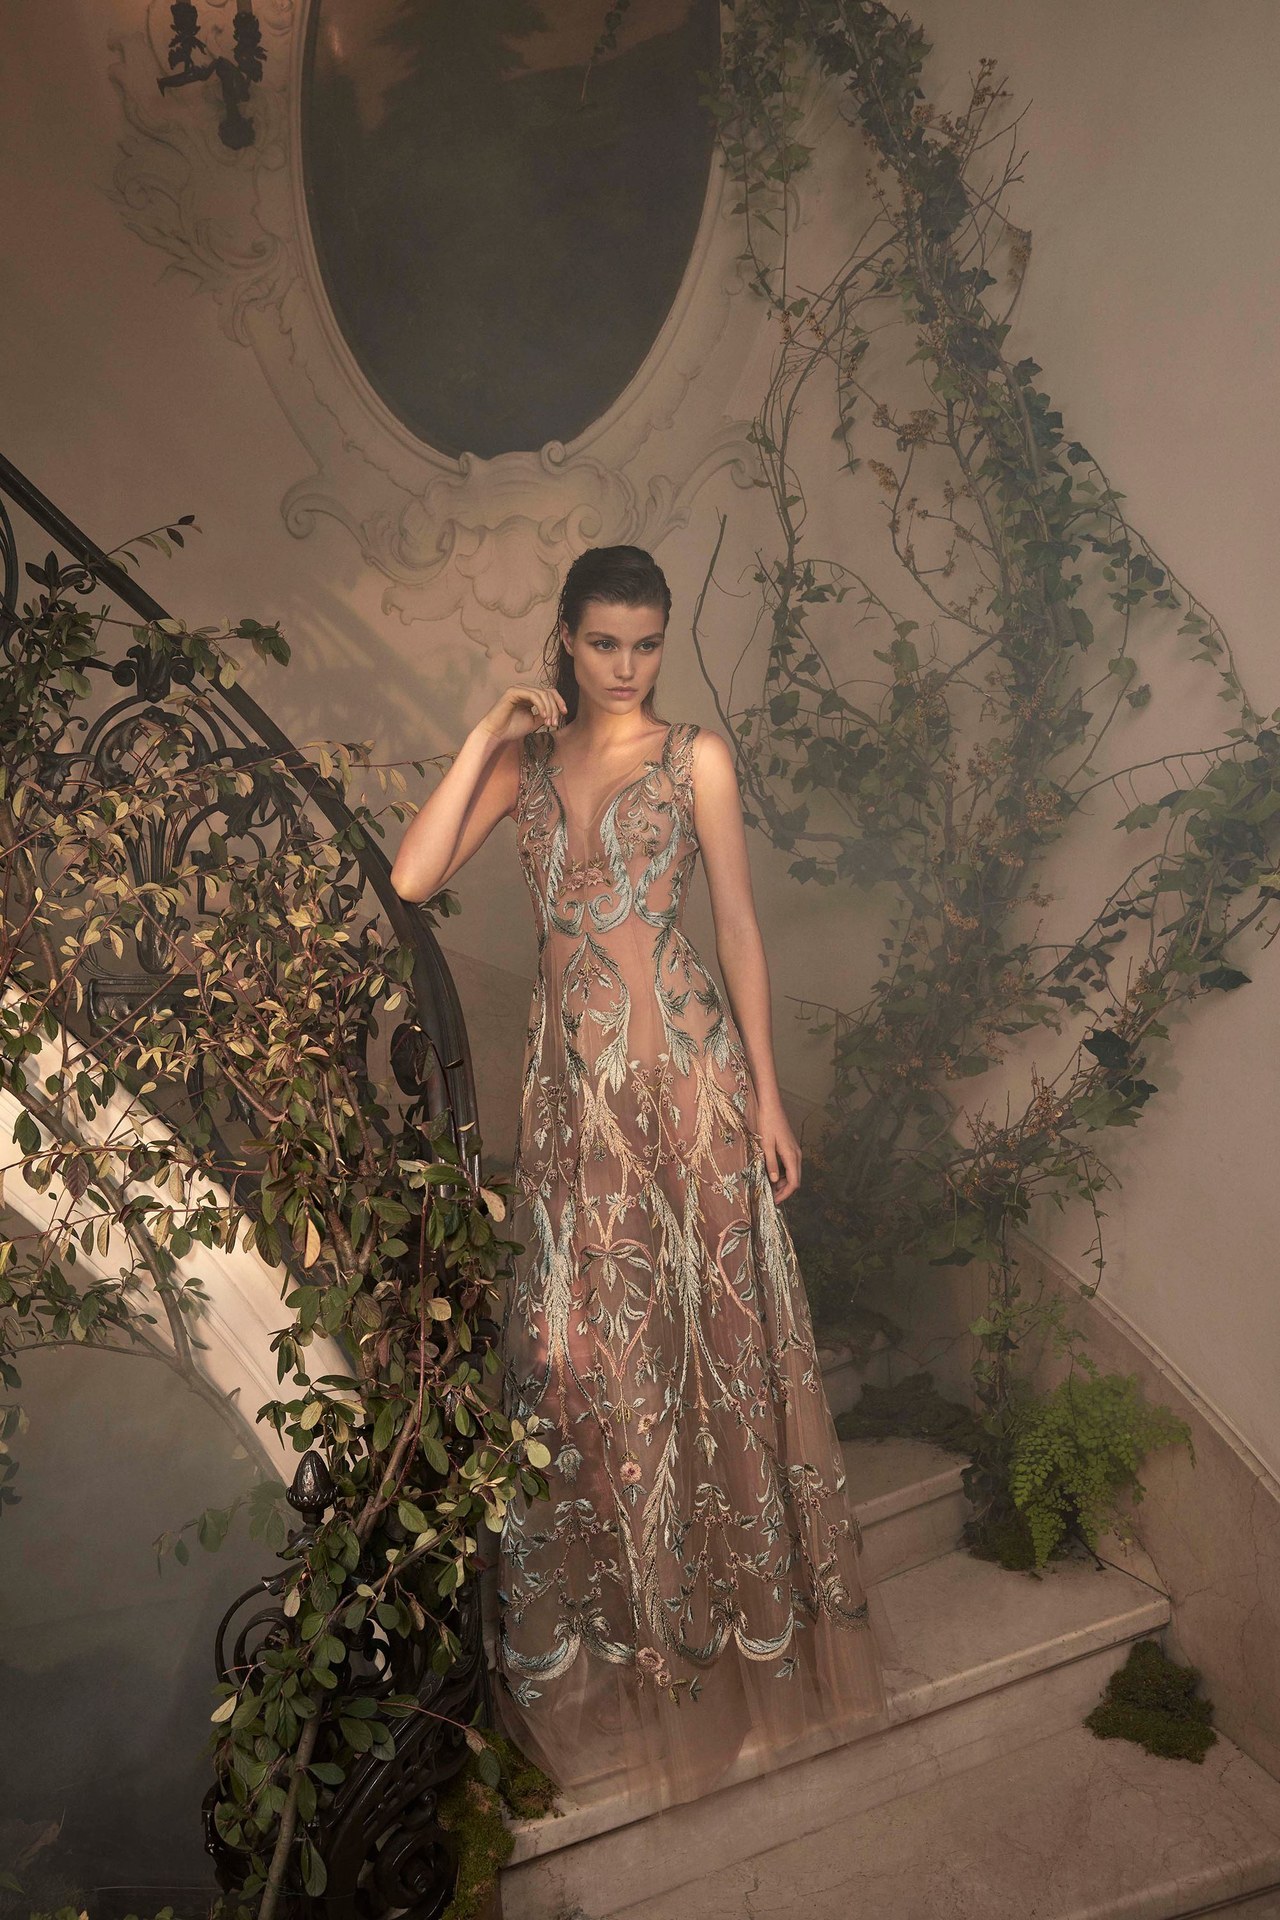 the-fashion-dish:
“Alberta Ferretti Limited Edition Spring 2018 Couture
”